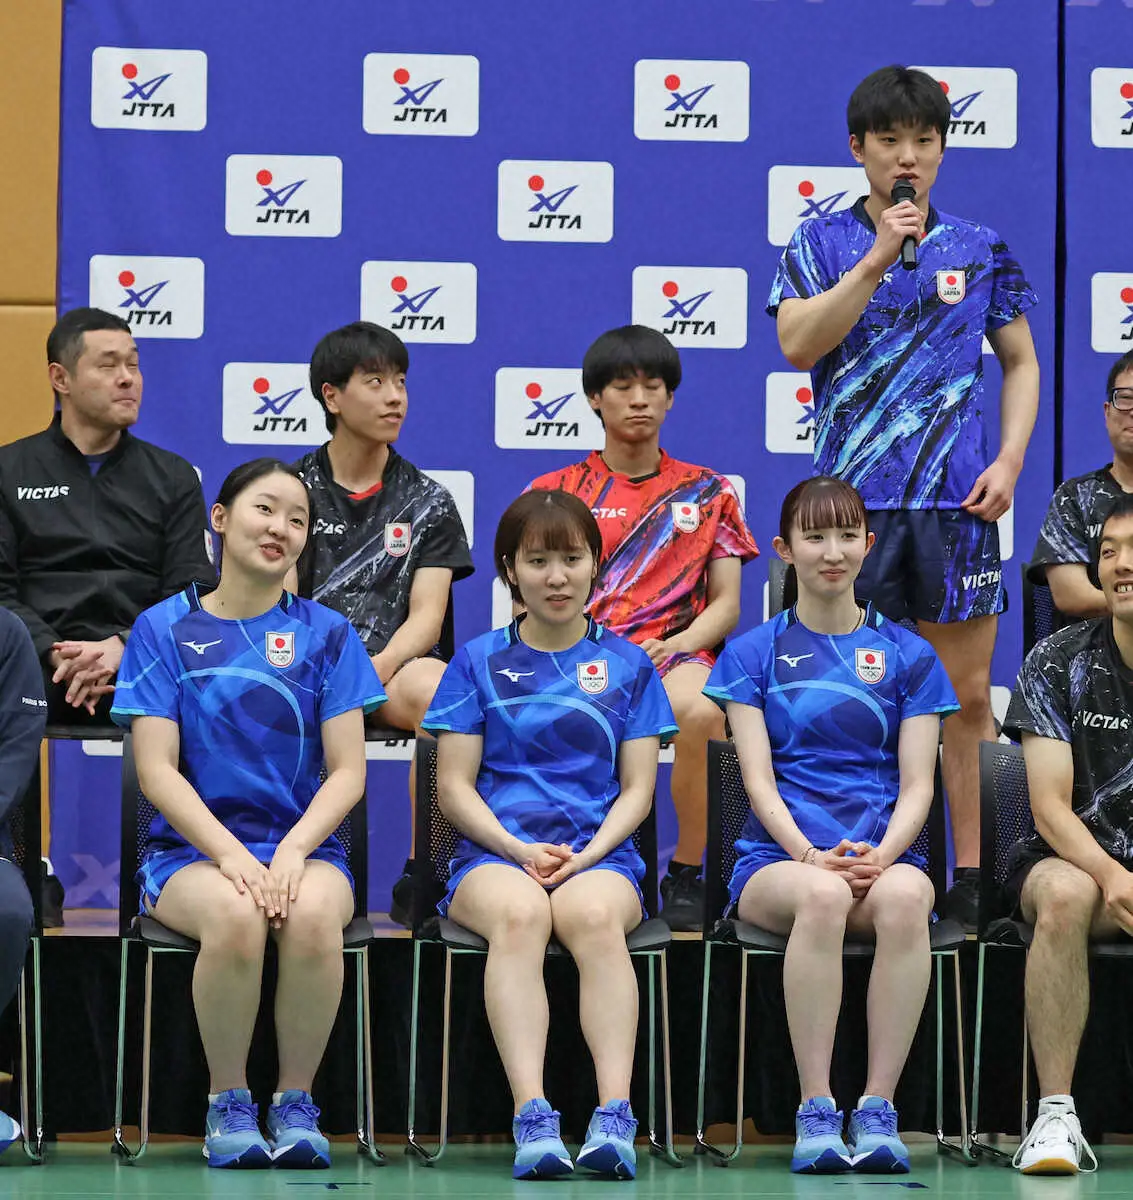 張本美和　「おにぎり」で兄・智和をサポート　卓球界初のきょうだいメダルへ共闘